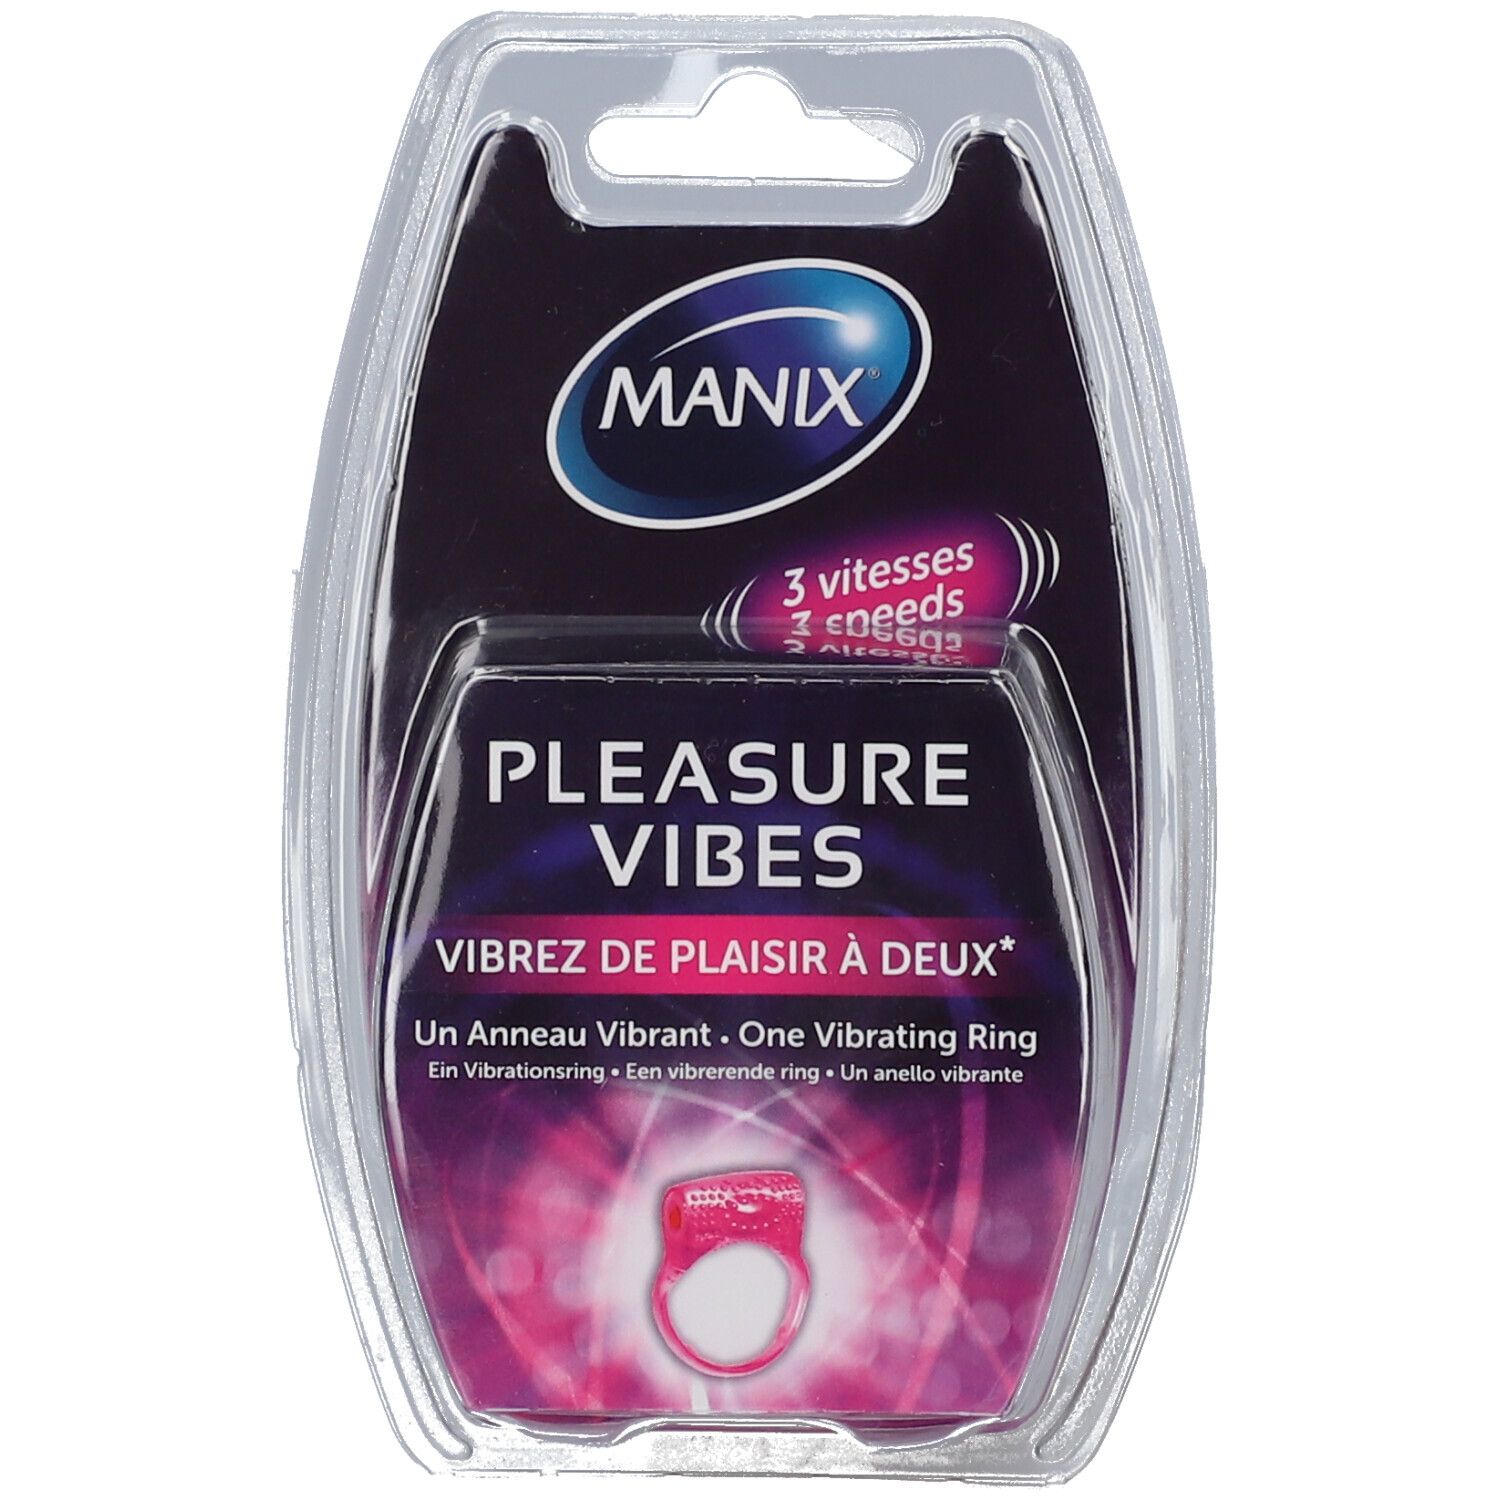 Manix® Pleasure Vibes Anneau Vibrant 3 Vitesses